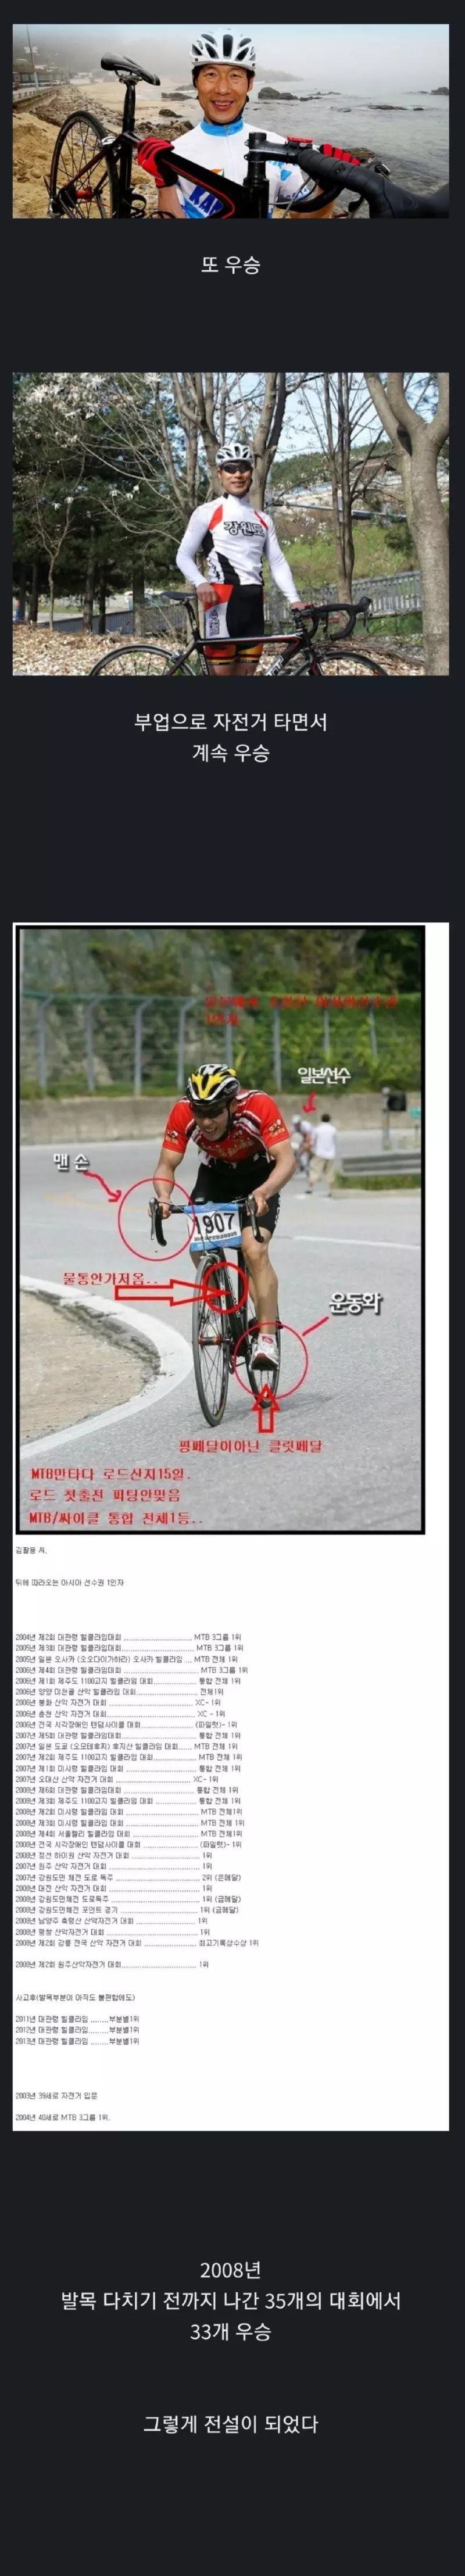 자전거 대회에서 전설이 되는 법